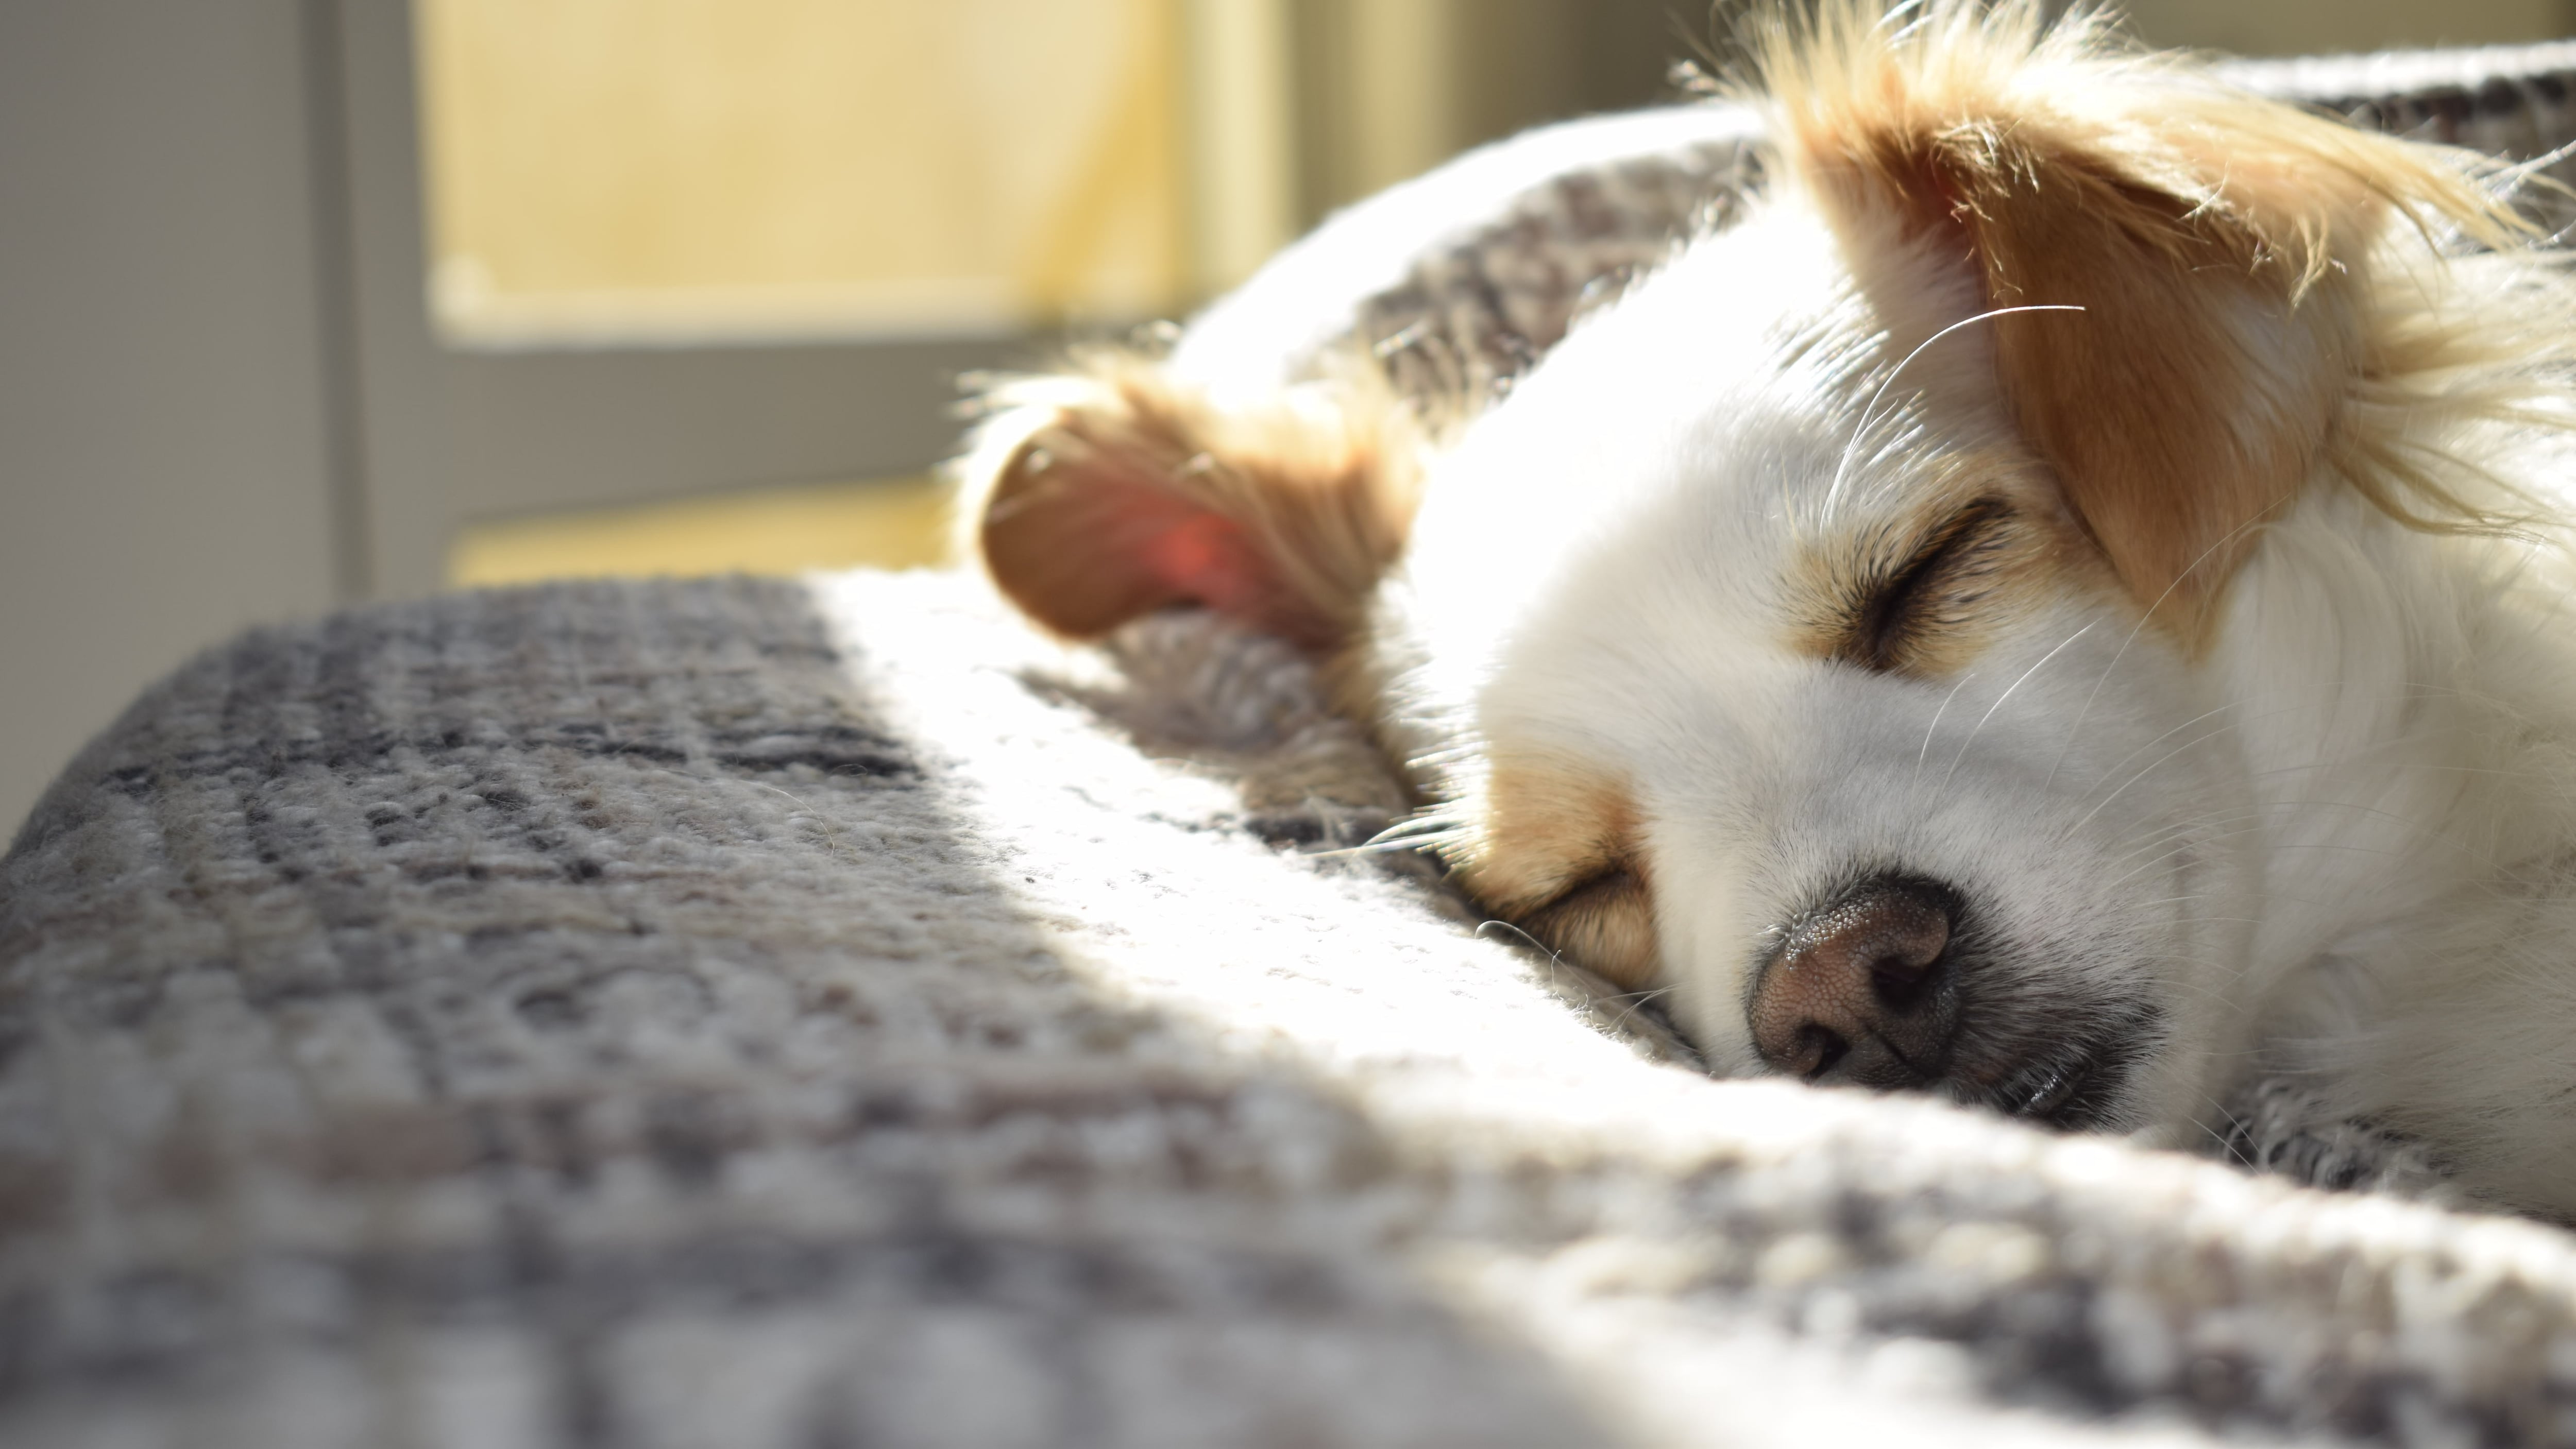 Alguns truques podem te ajudar a dormir melhor com seu animal de estimação